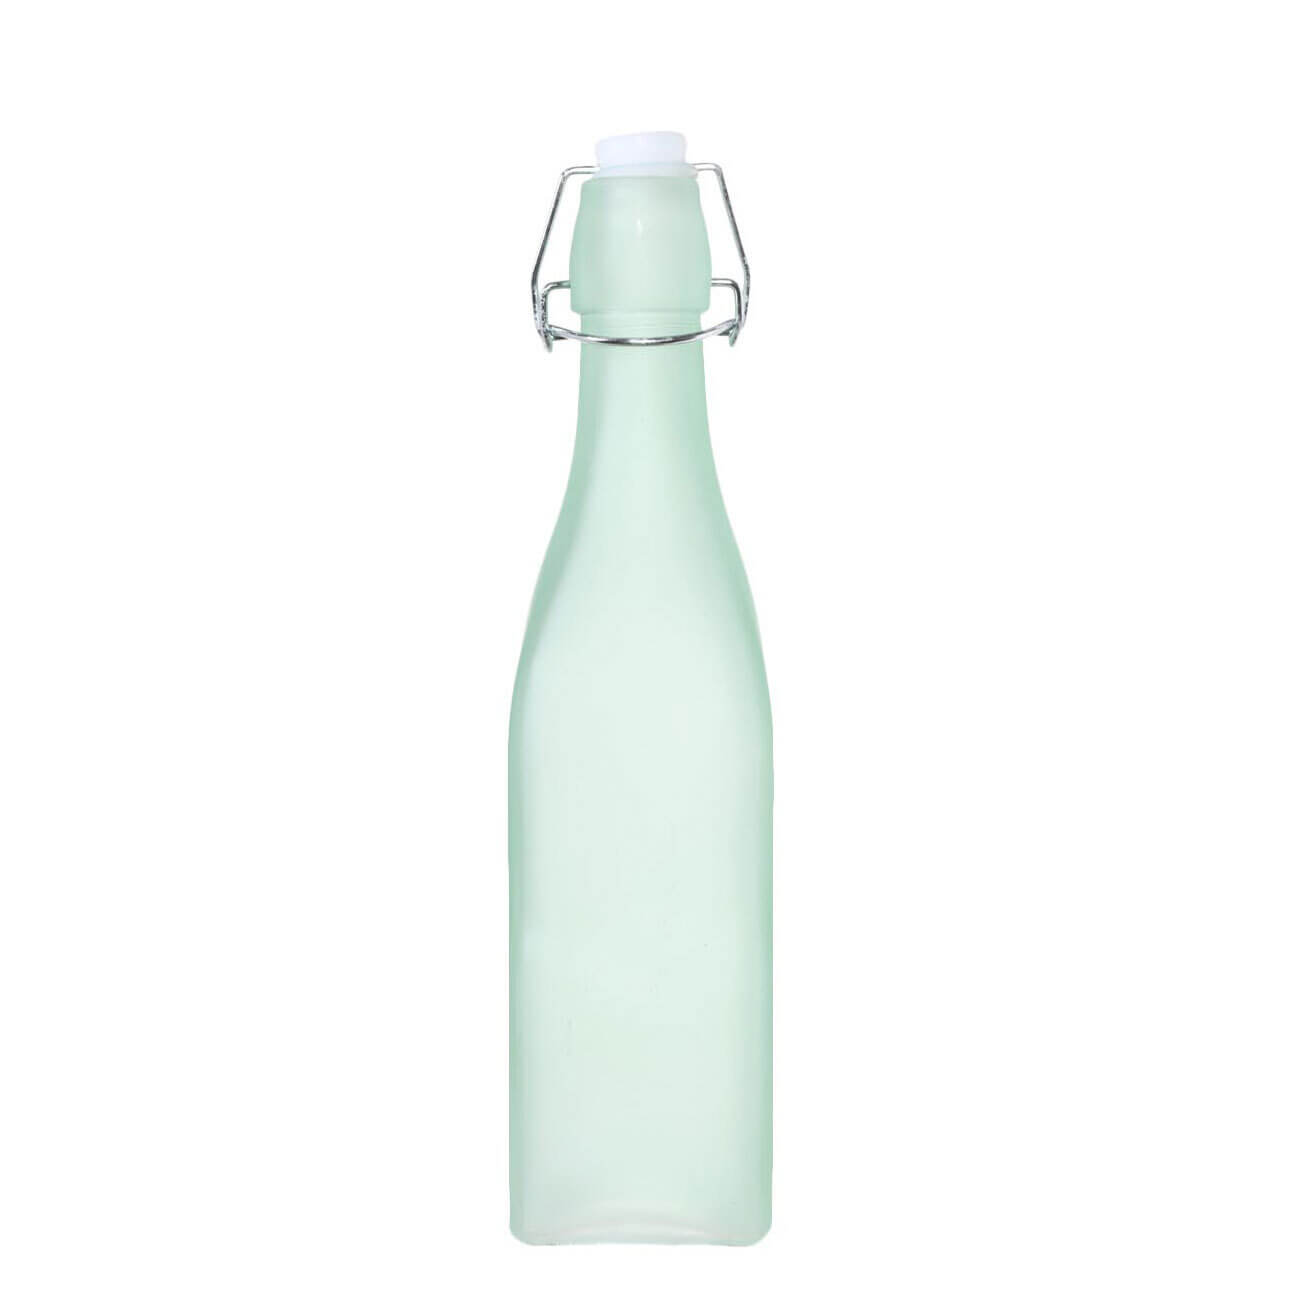 Бутылка для масла или уксуса, 500 мл, с клипсой, стекло/металл, зеленая, Light kitchen бутылка для масла или уксуса 500 мл с дозатором стекло б camellia